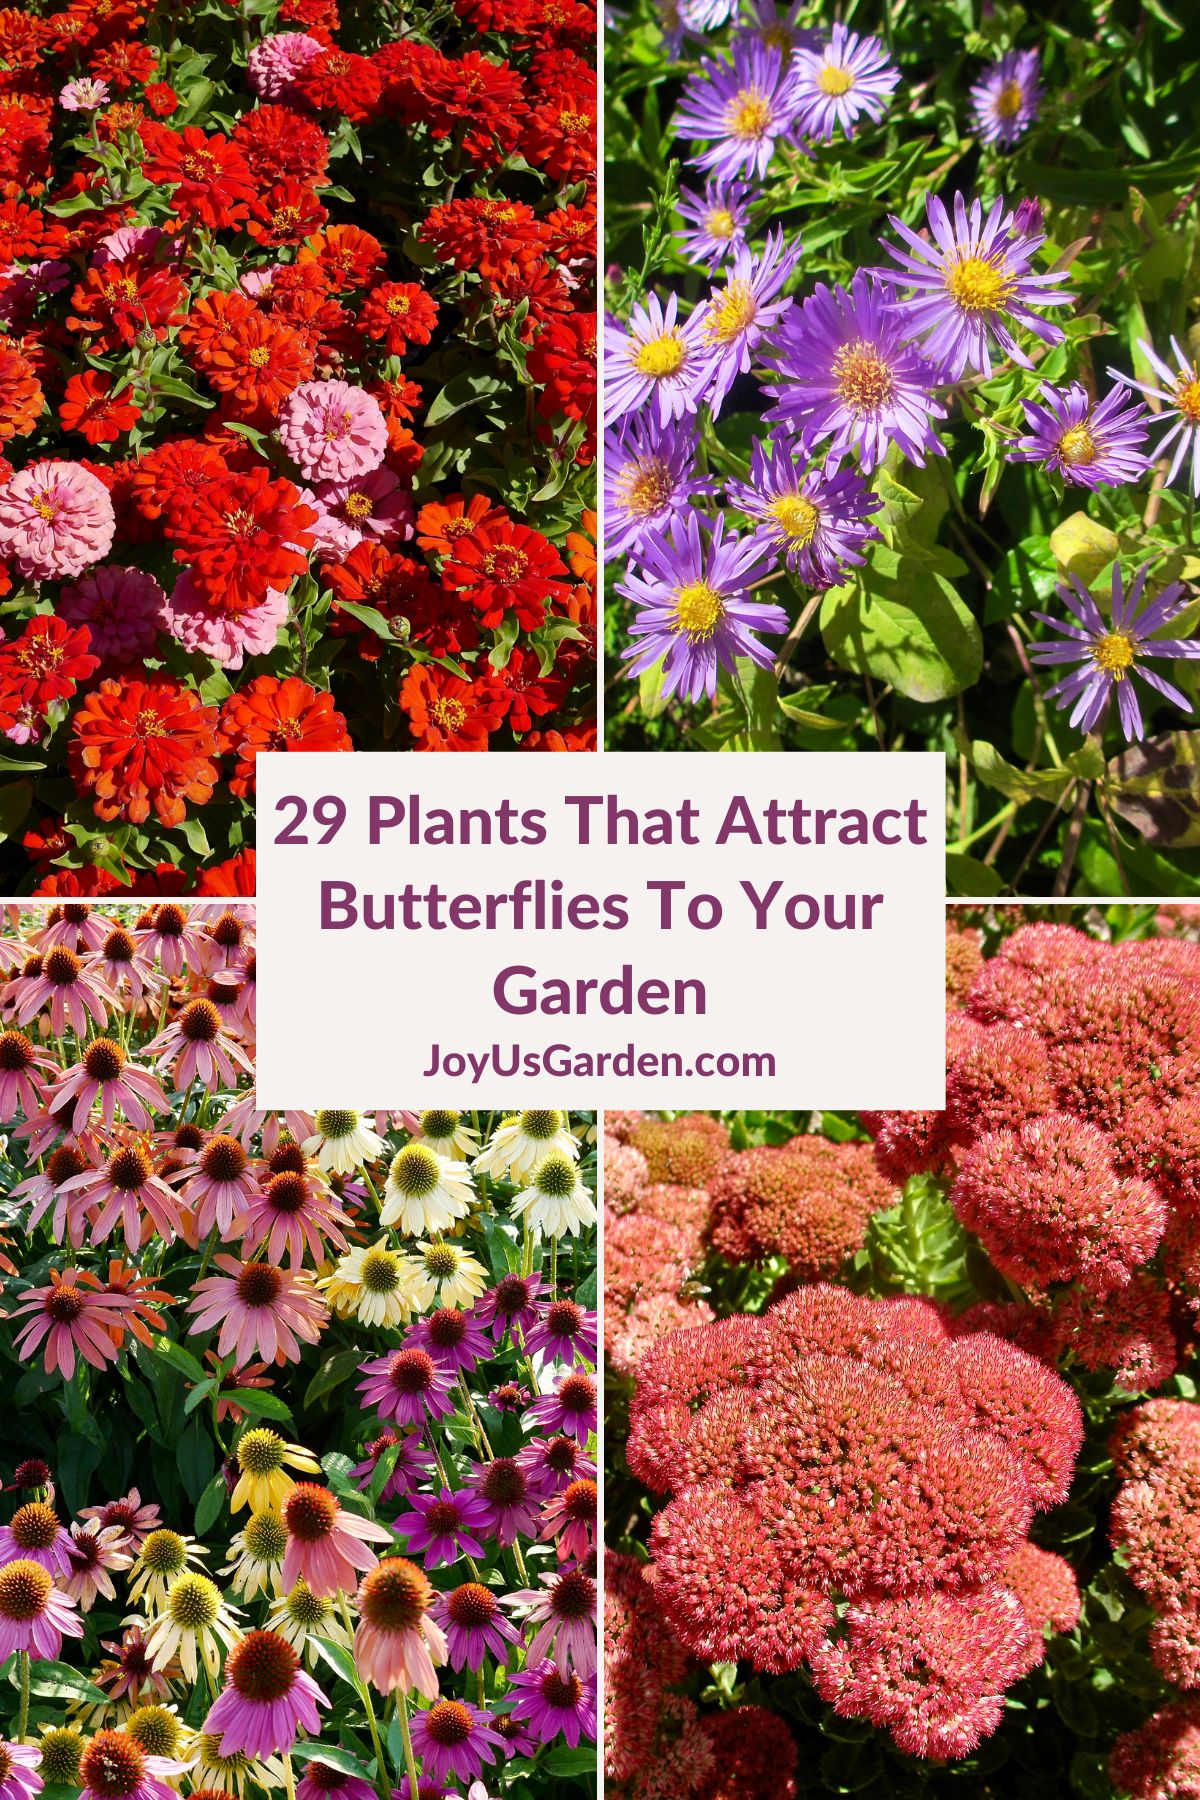  29 prekrasnih biljaka koje privlače leptire u vaš vrt